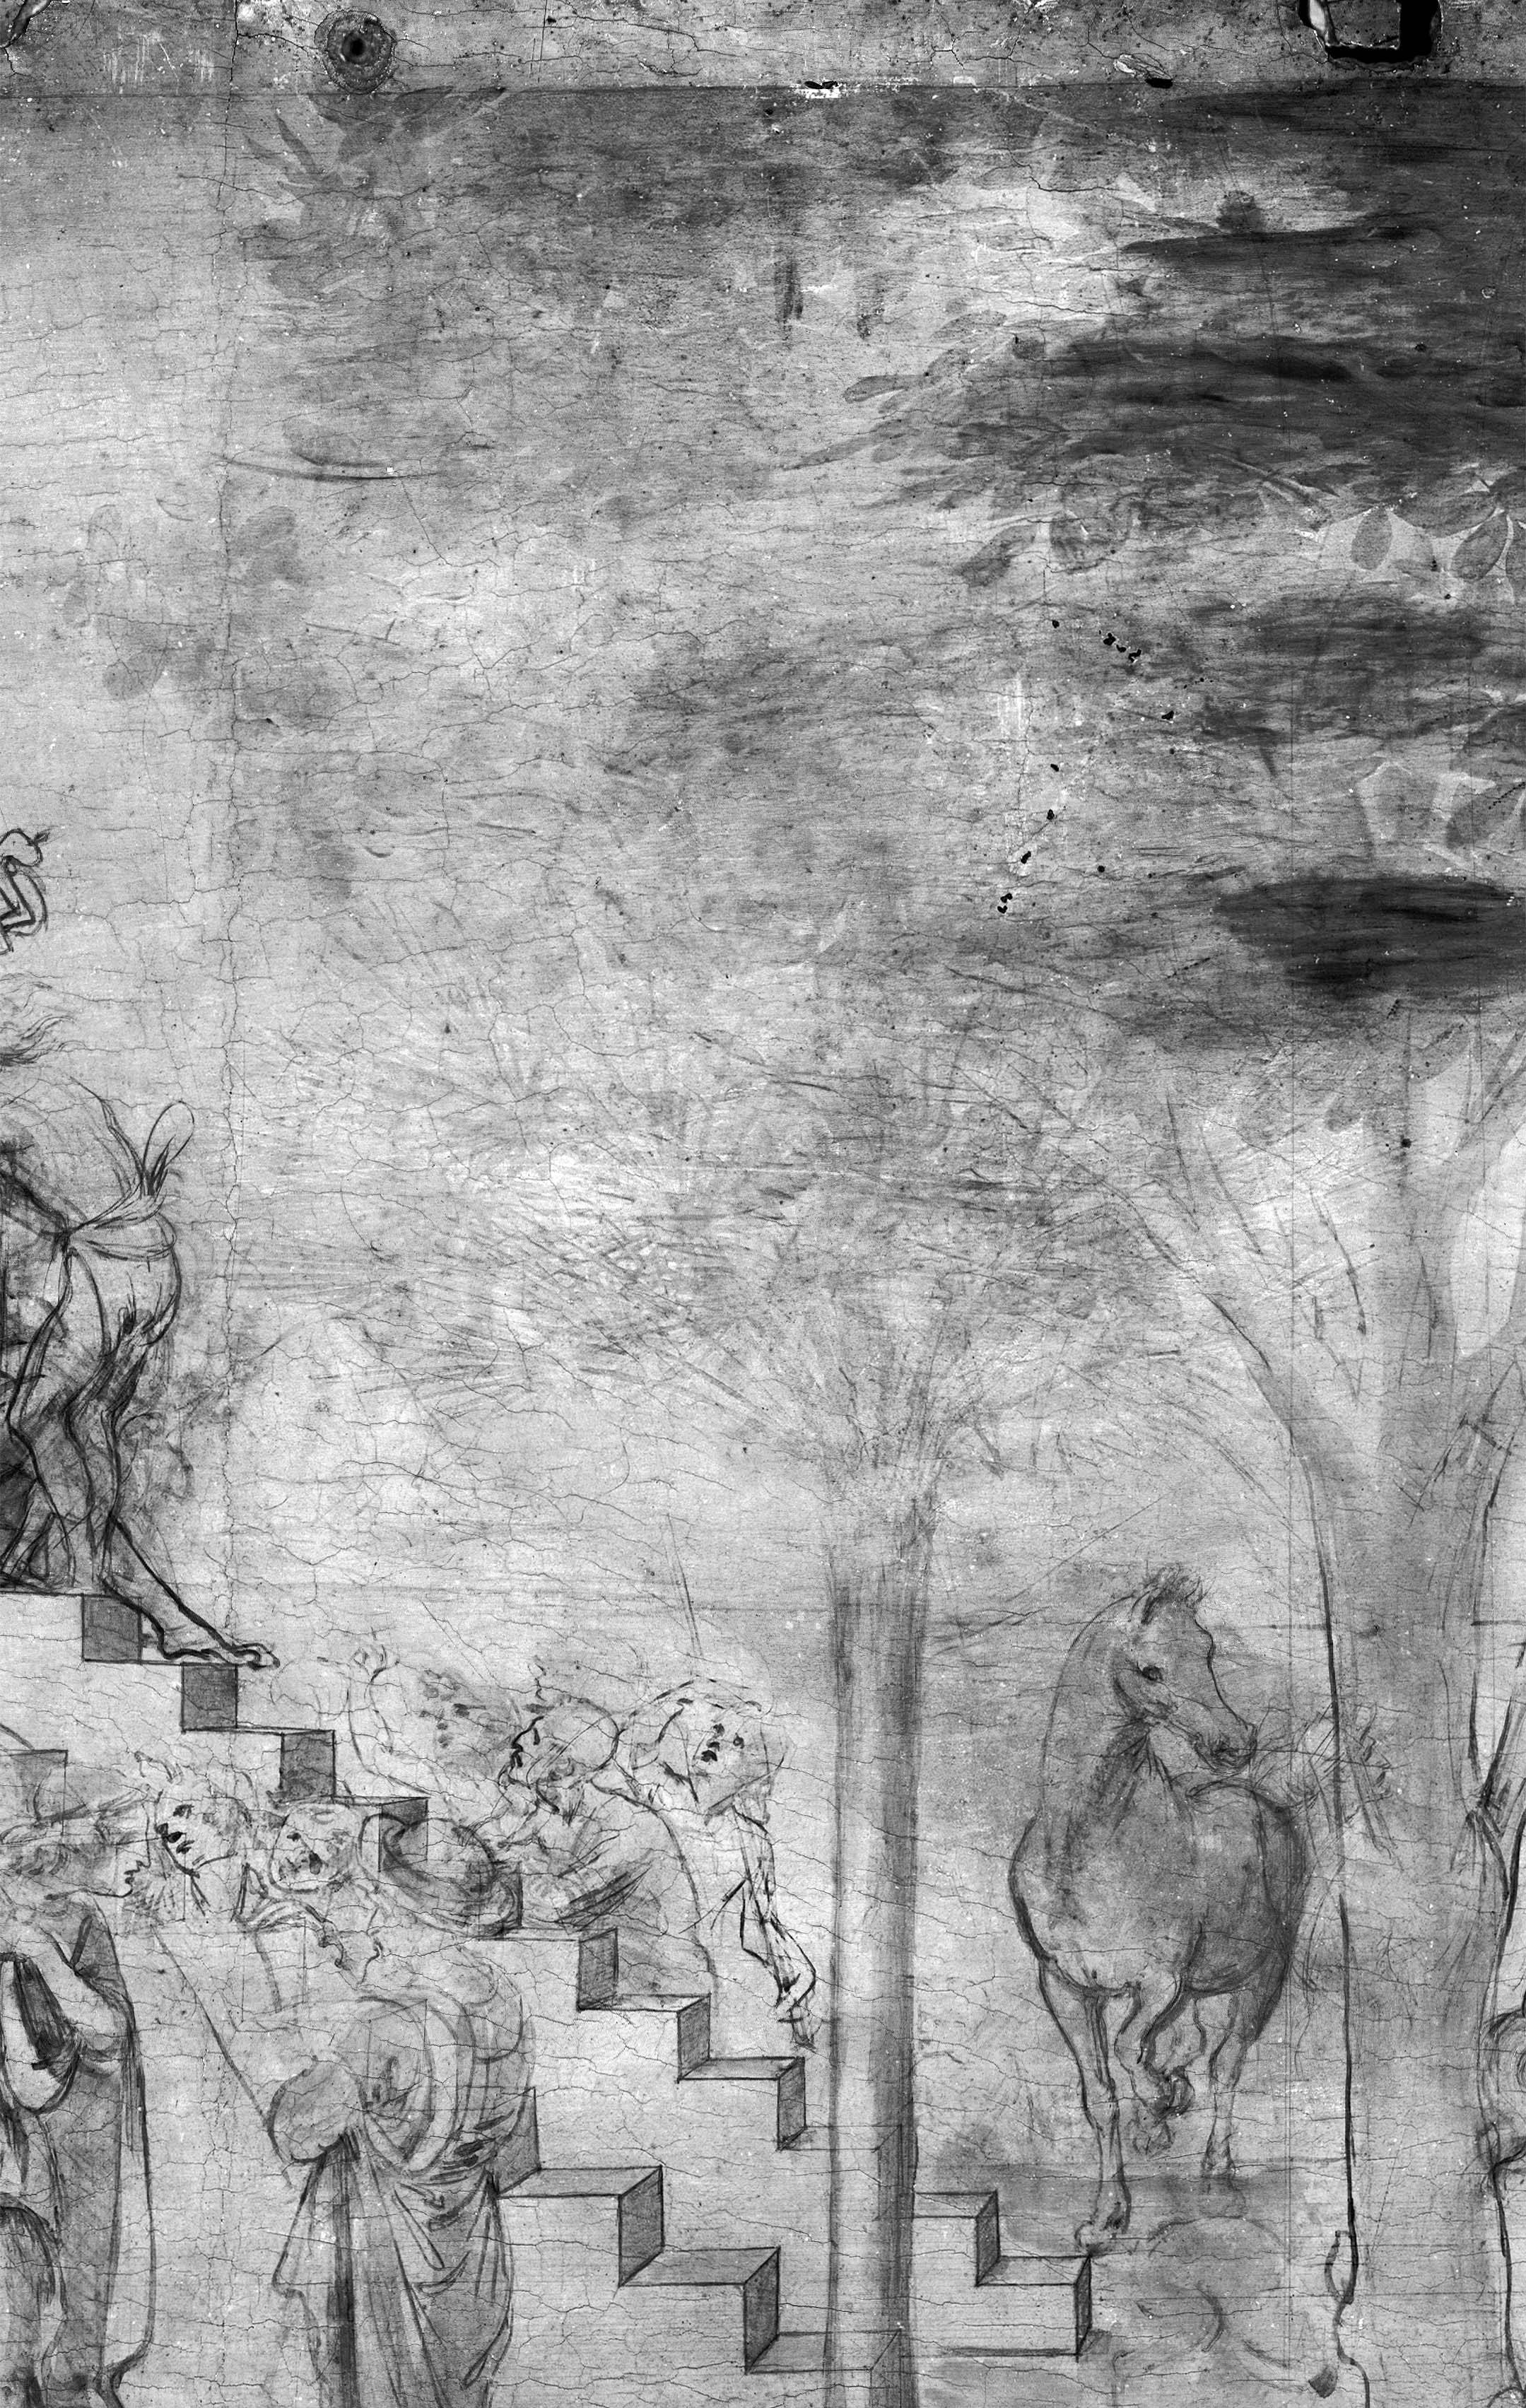 Il restauro dell’Adorazione dei Magi di Leonardo da Vinci. Capire il non-finito